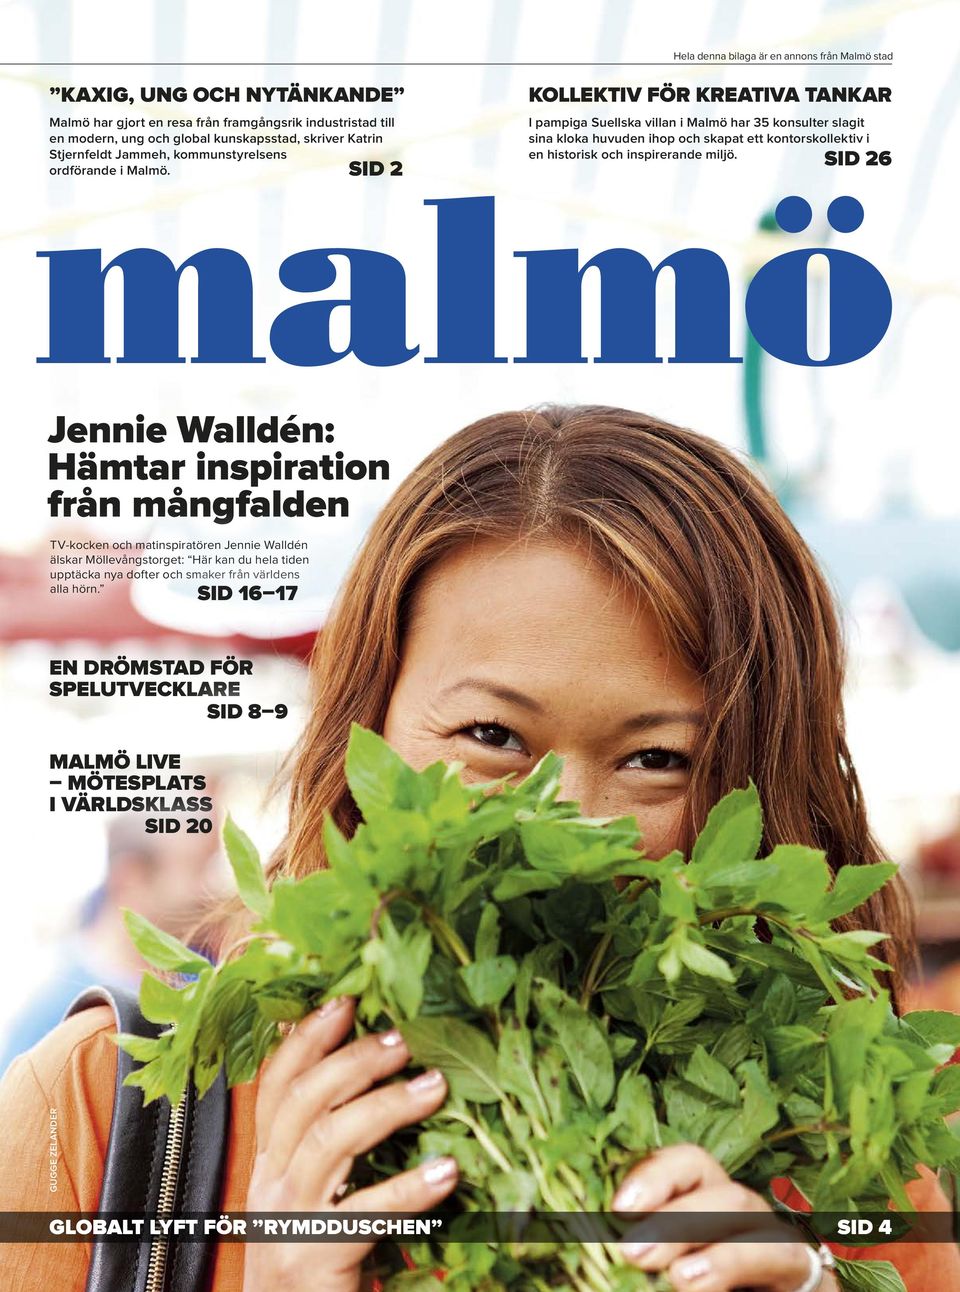 inspirerande miljö. ordförande i Malmö.